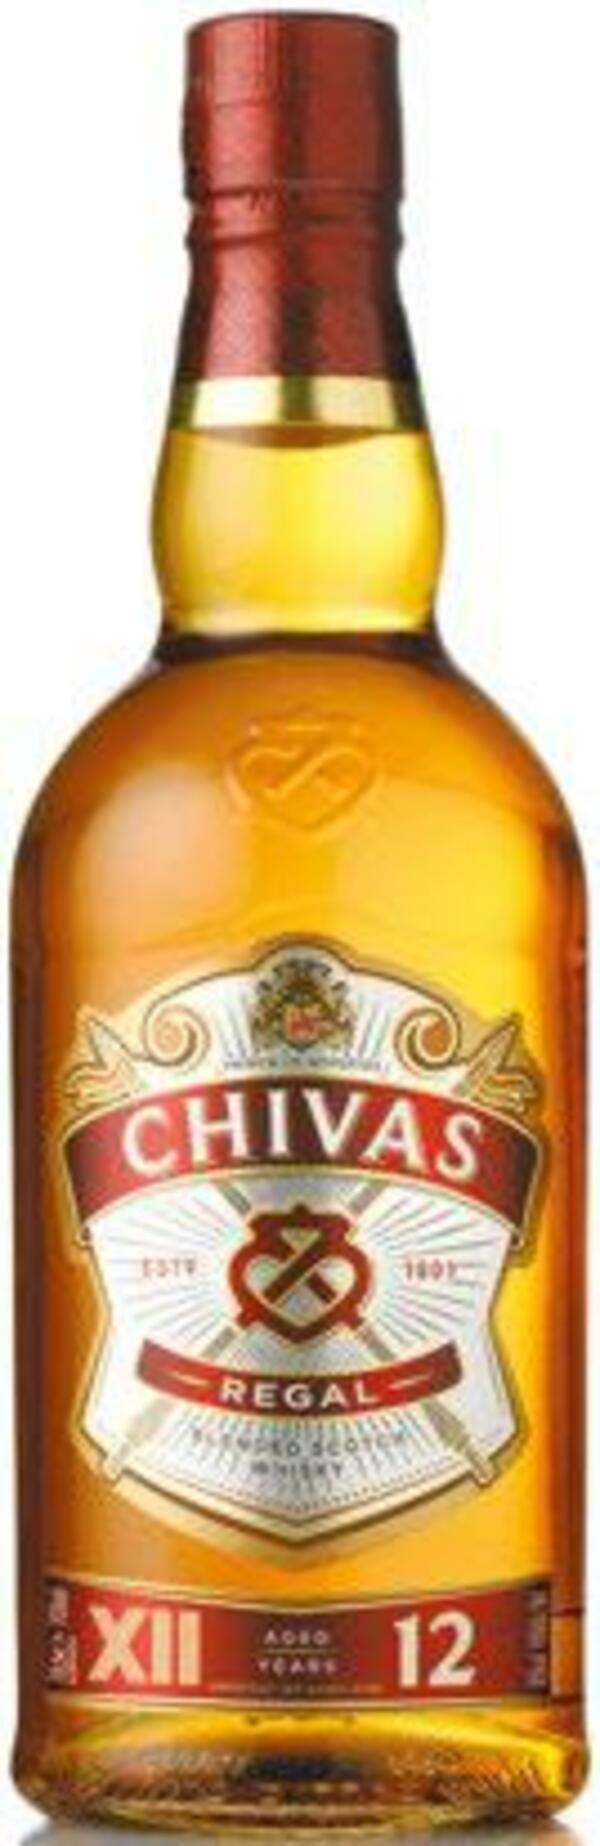 Bild 1 von Chivas Regal Scotch Whisky